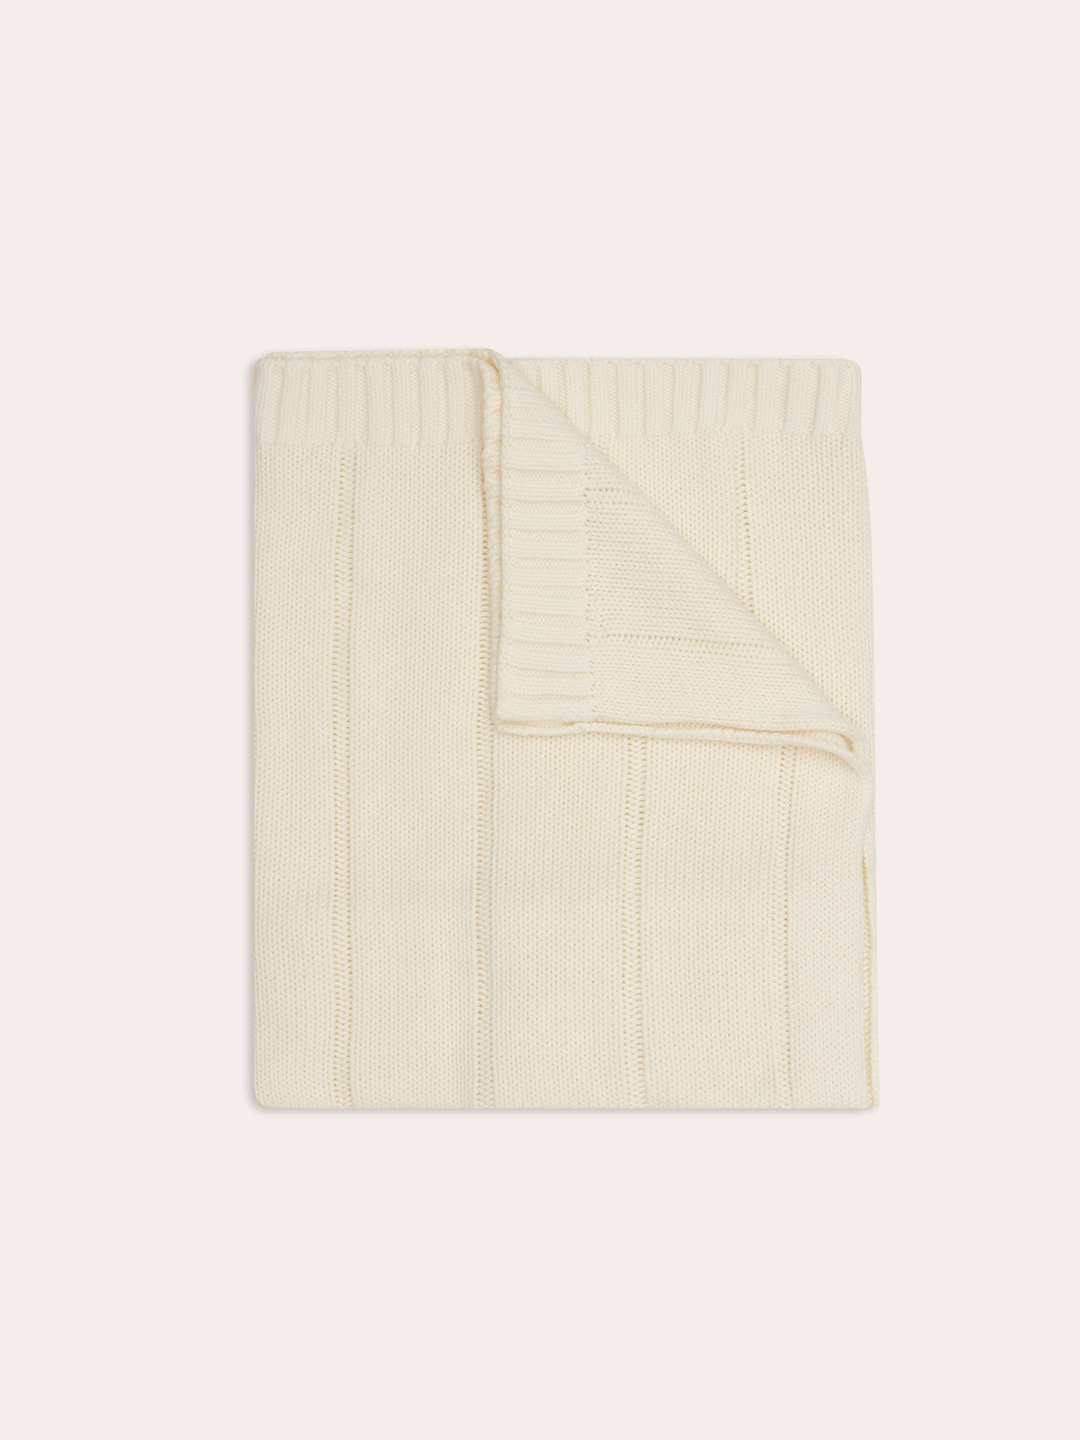 Unisex Baby Knit Blanket - Vanilla